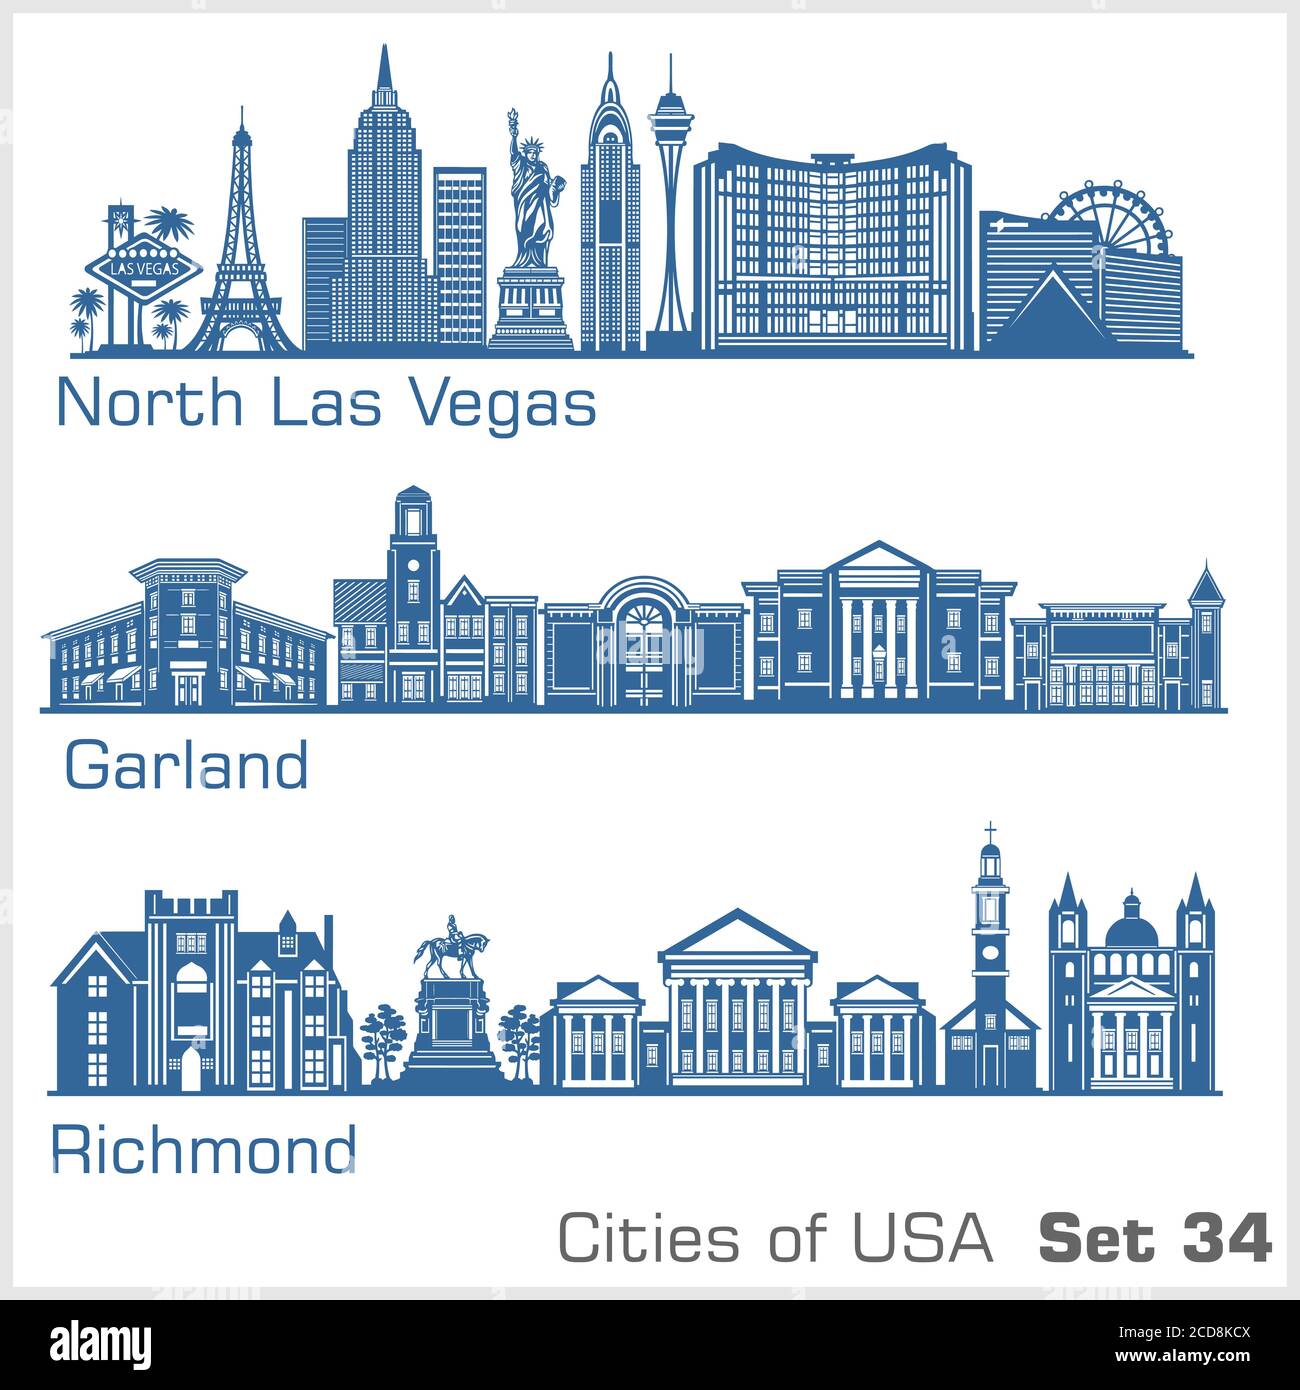 Städte der USA - North Las Vegas, Garland, Richmond. Detaillierte Architektur. Trendige Vektorgrafik. Stock Vektor